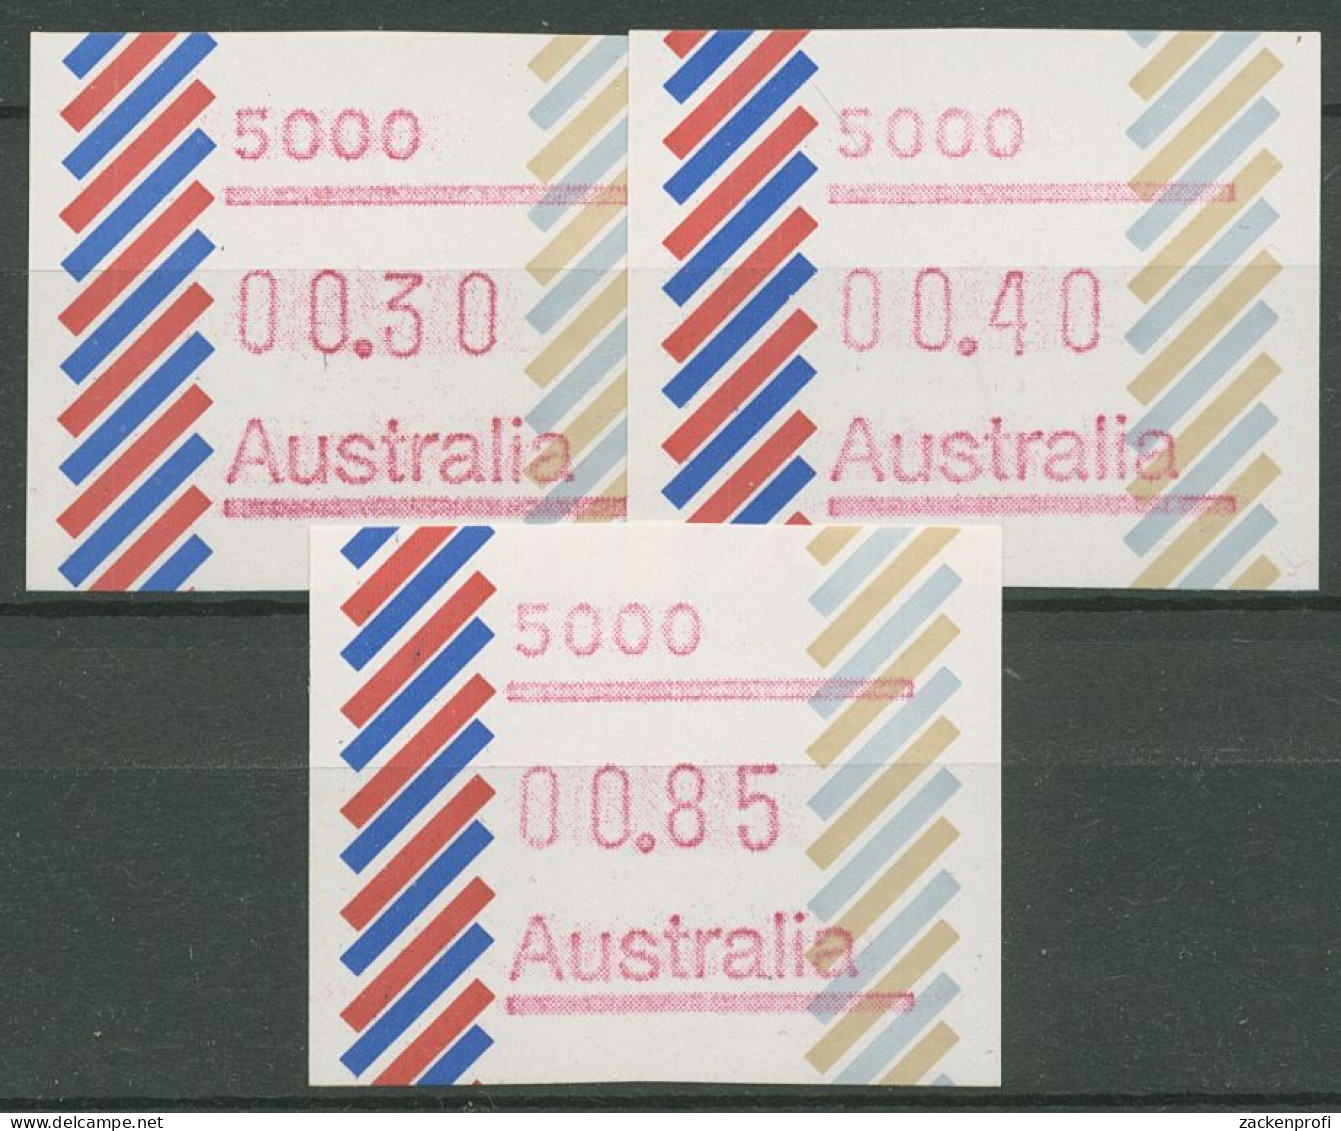 Australien 1984 Balken Tastensatz Automatenmarke 1 S1, 5000 Postfrisch - Automatenmarken [ATM]